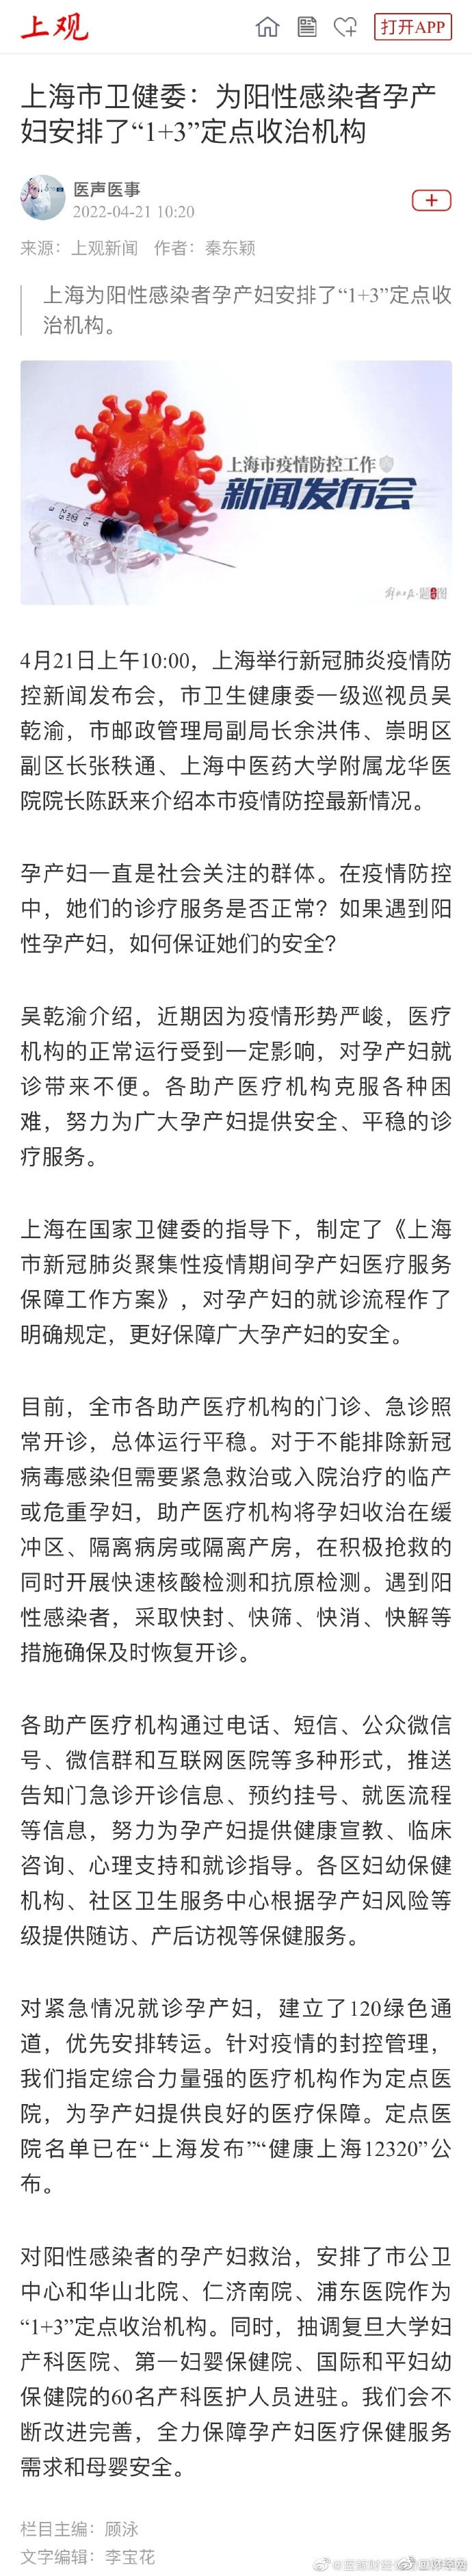 上海阳性孕产妇安排在定点医院救治 对紧急就诊孕产妇建立120绿色通道